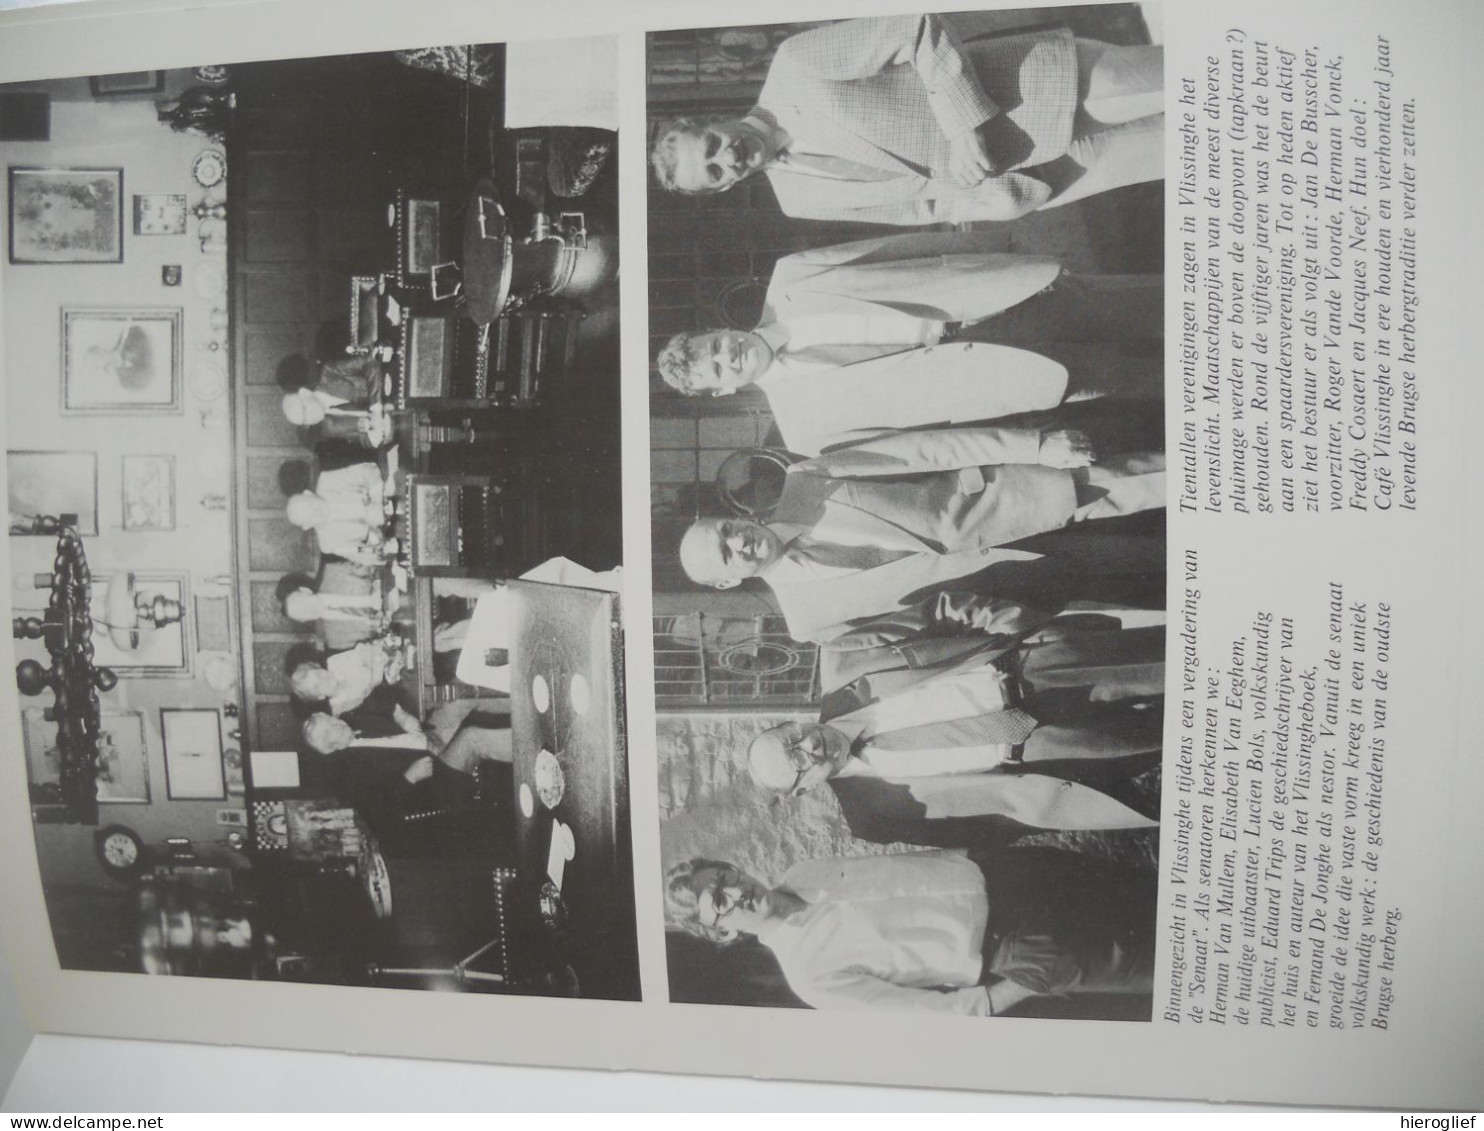 Café Vlissinghe - Een eeuwenoude Brugse herberg 1515-1985 door Eduard Trigs Brugge kwartier Sint-Anna wijk heemkunde